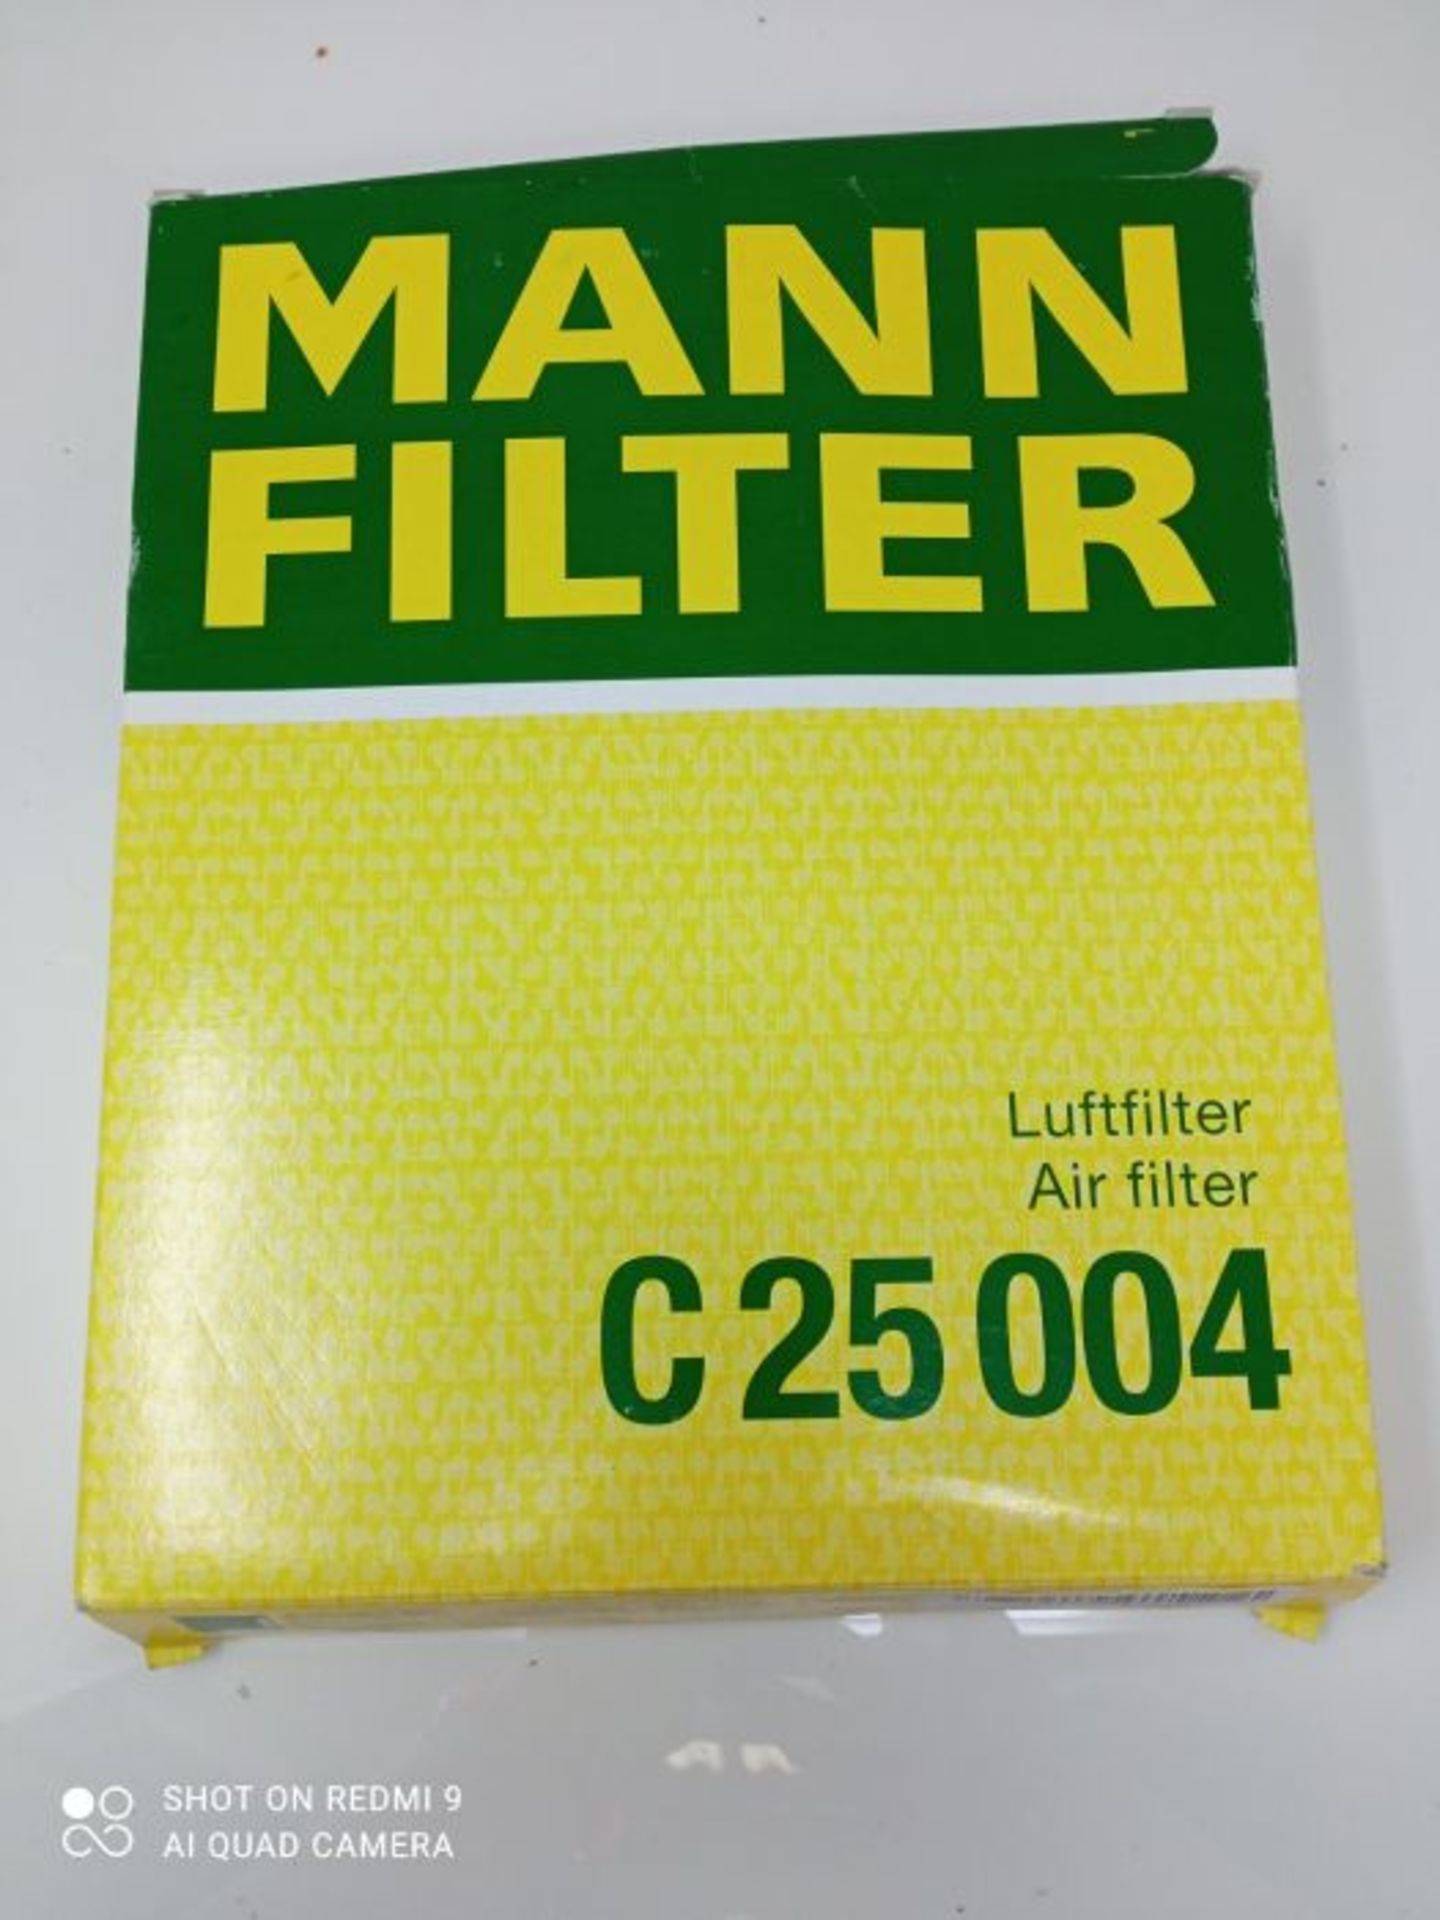 Original MANN-Filter Air Filter C 25 004  For Passenger Cars - Image 2 of 3